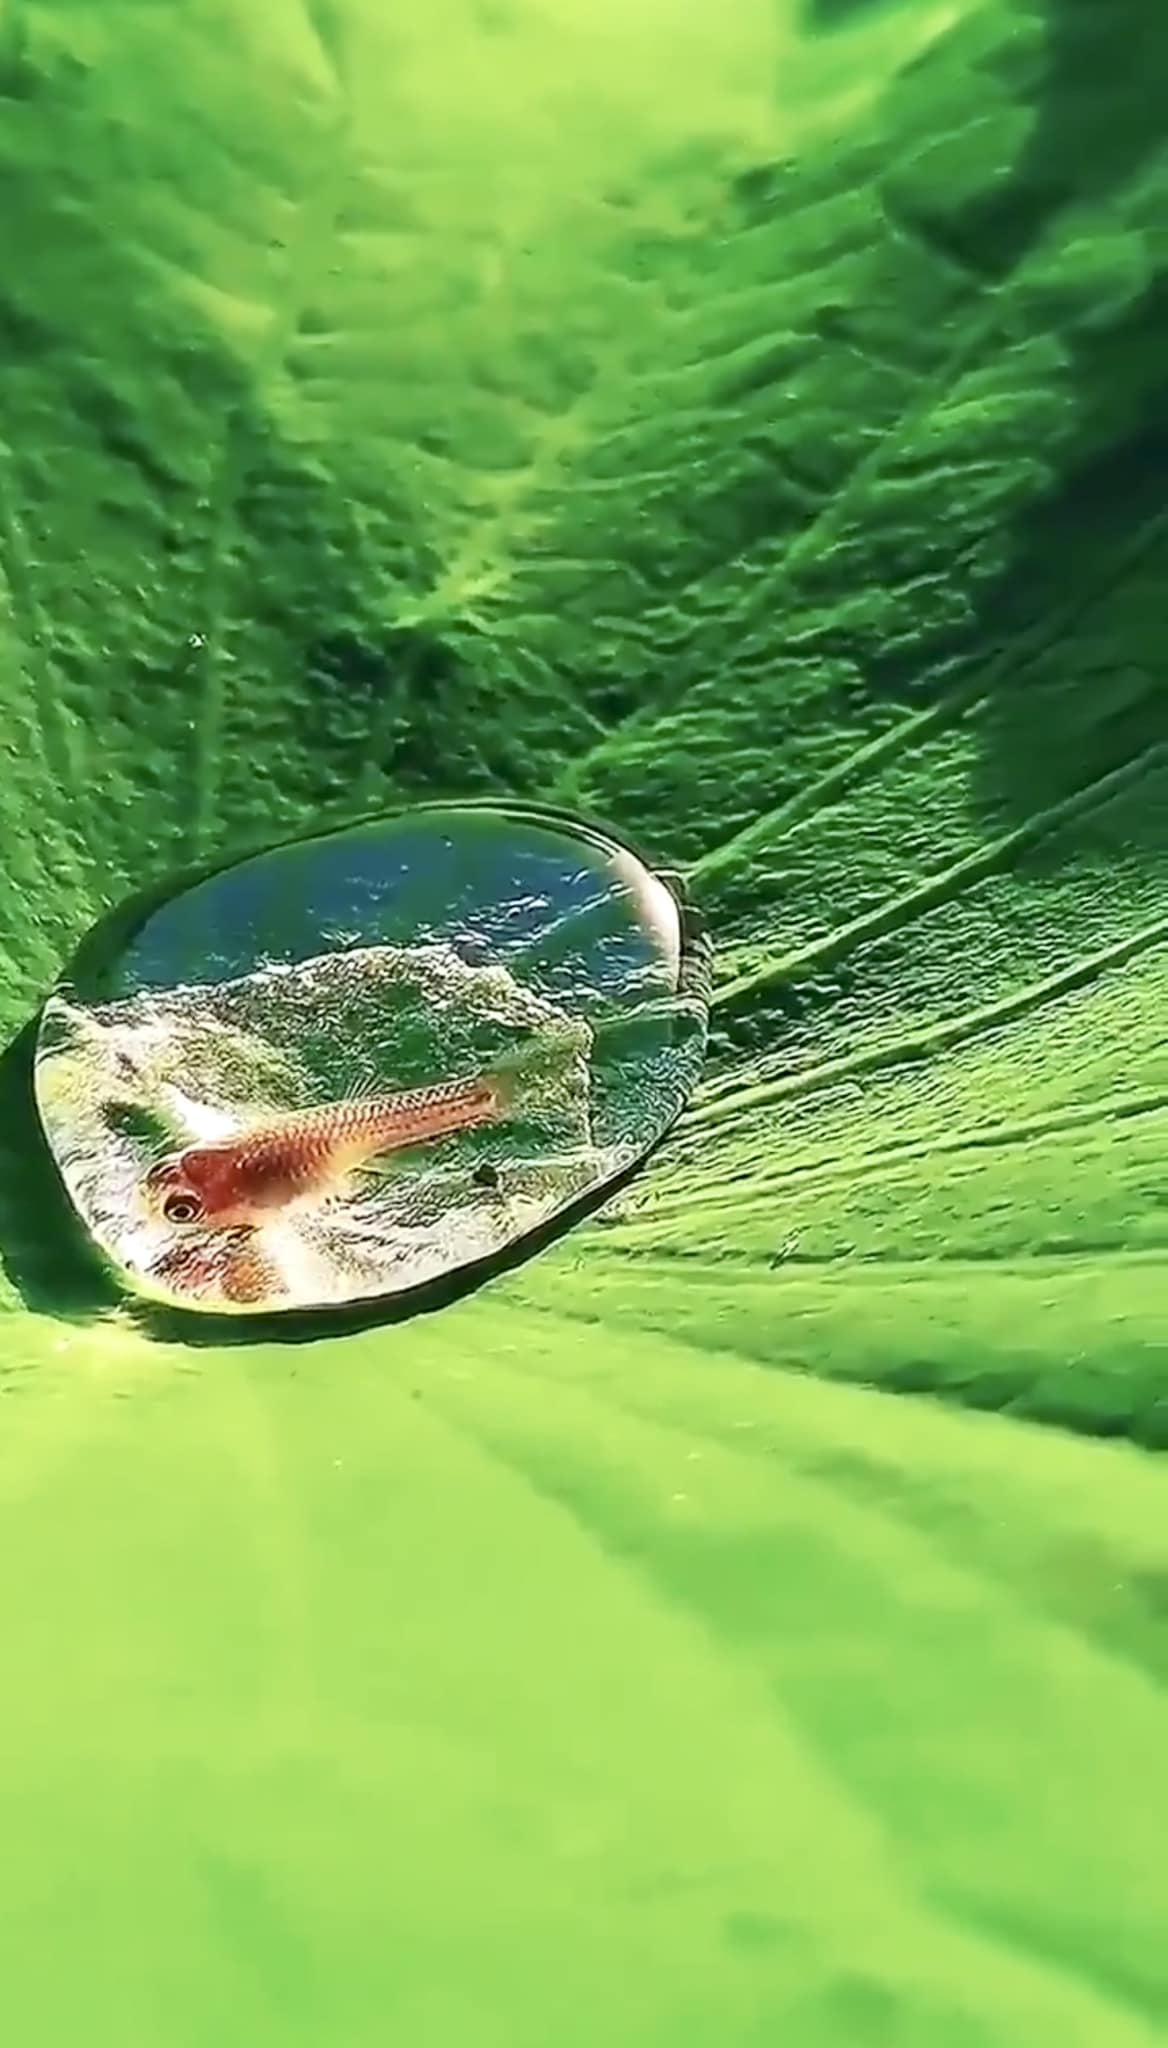 Microcosmos y magia.
 Un pececito en una gota de agua en una hoja de lotus.
Pareciera que la gota abraza a su Huesped …